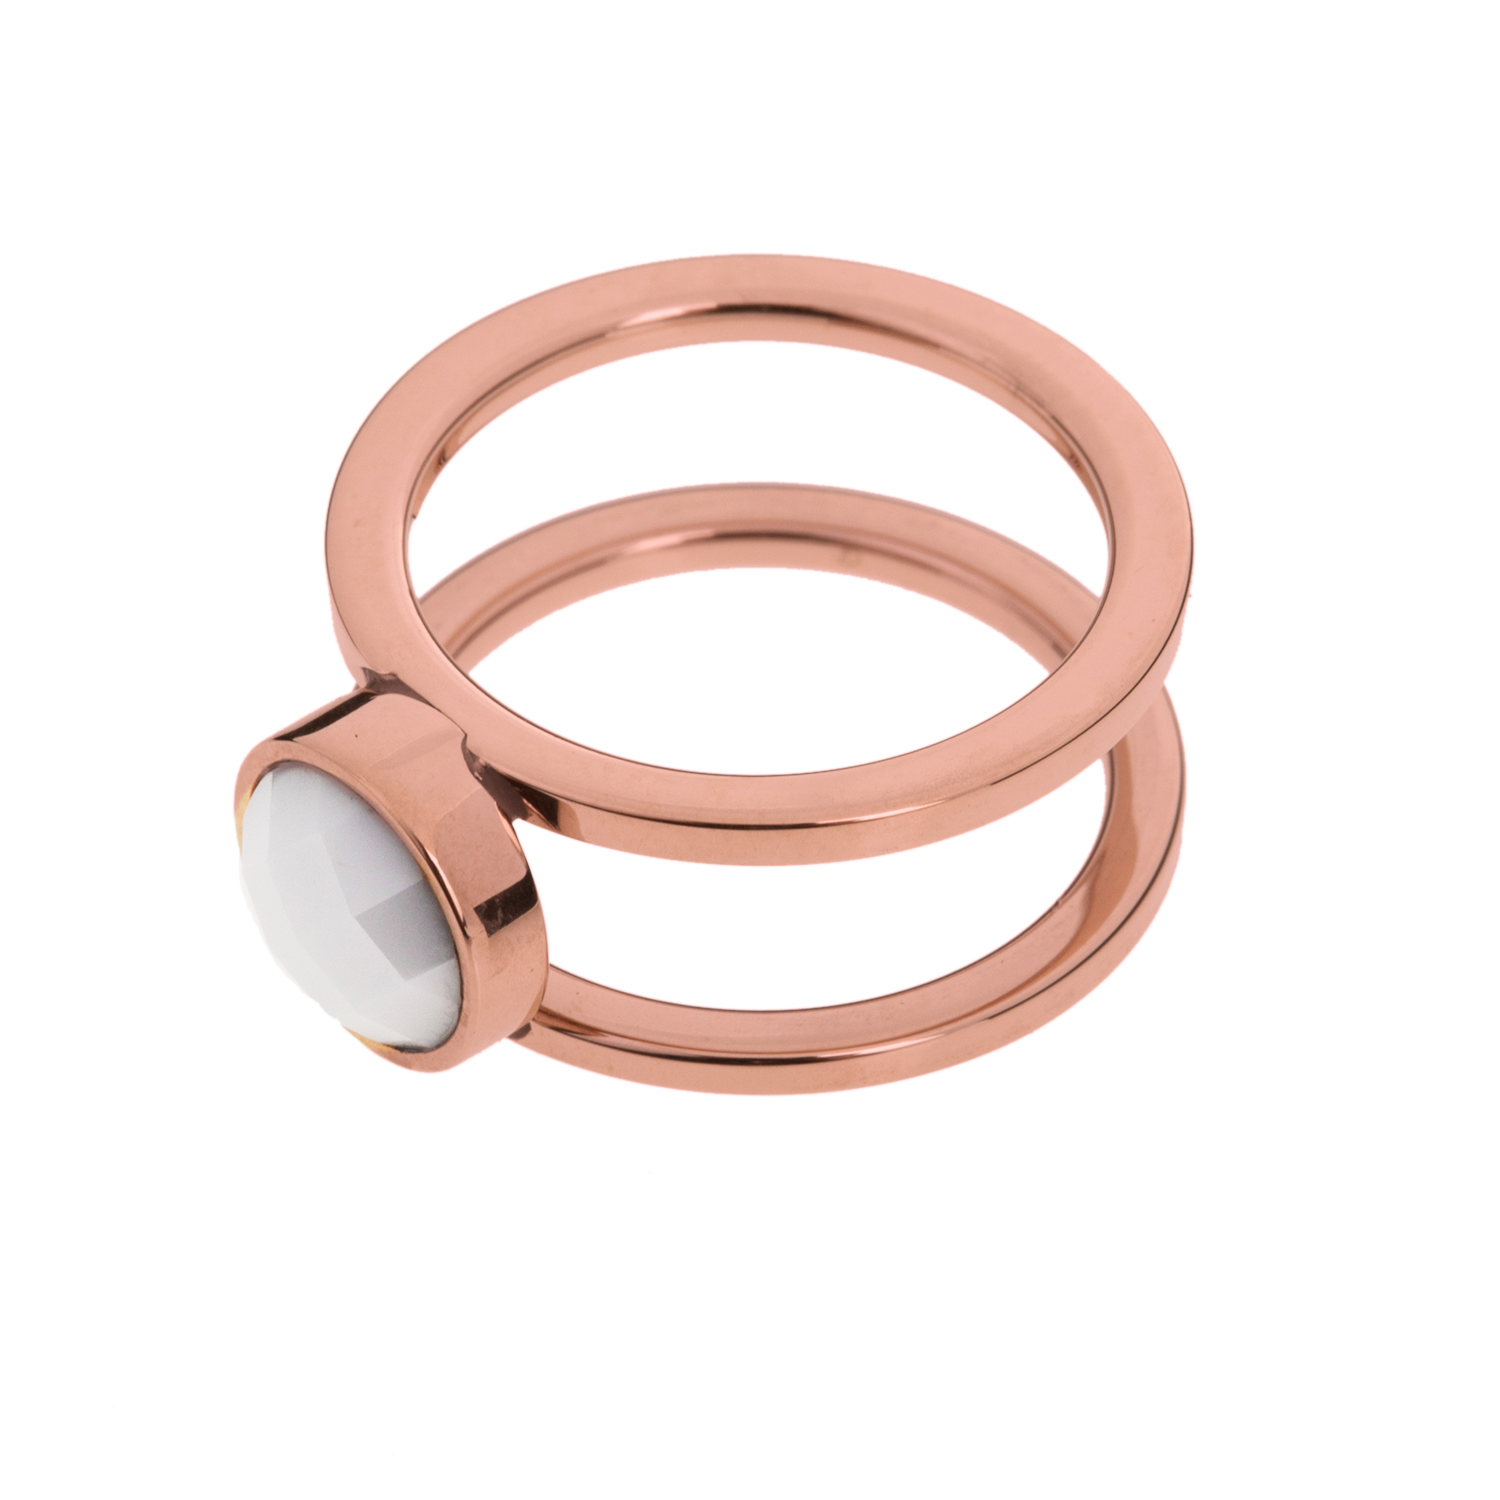 FOLLI FOLLIE - Σετ από δύο επίχρυσα ατσάλινα δαχτυλίδια FOLLI FOLLIE ροζ-χρυσά